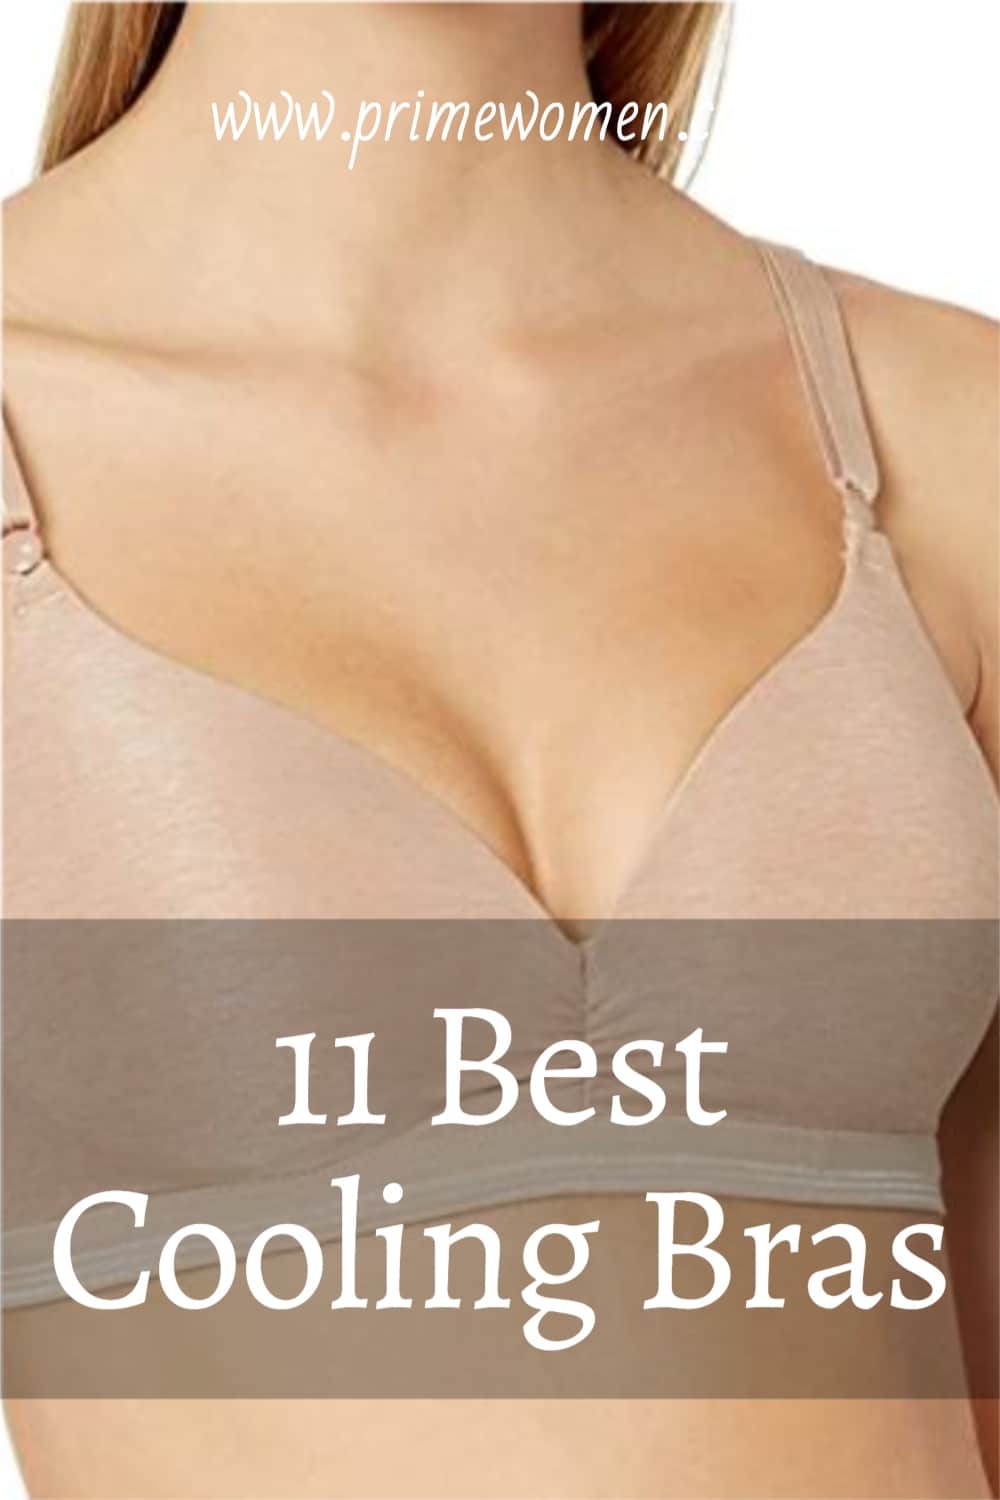 11-Best-Cooling-Bras